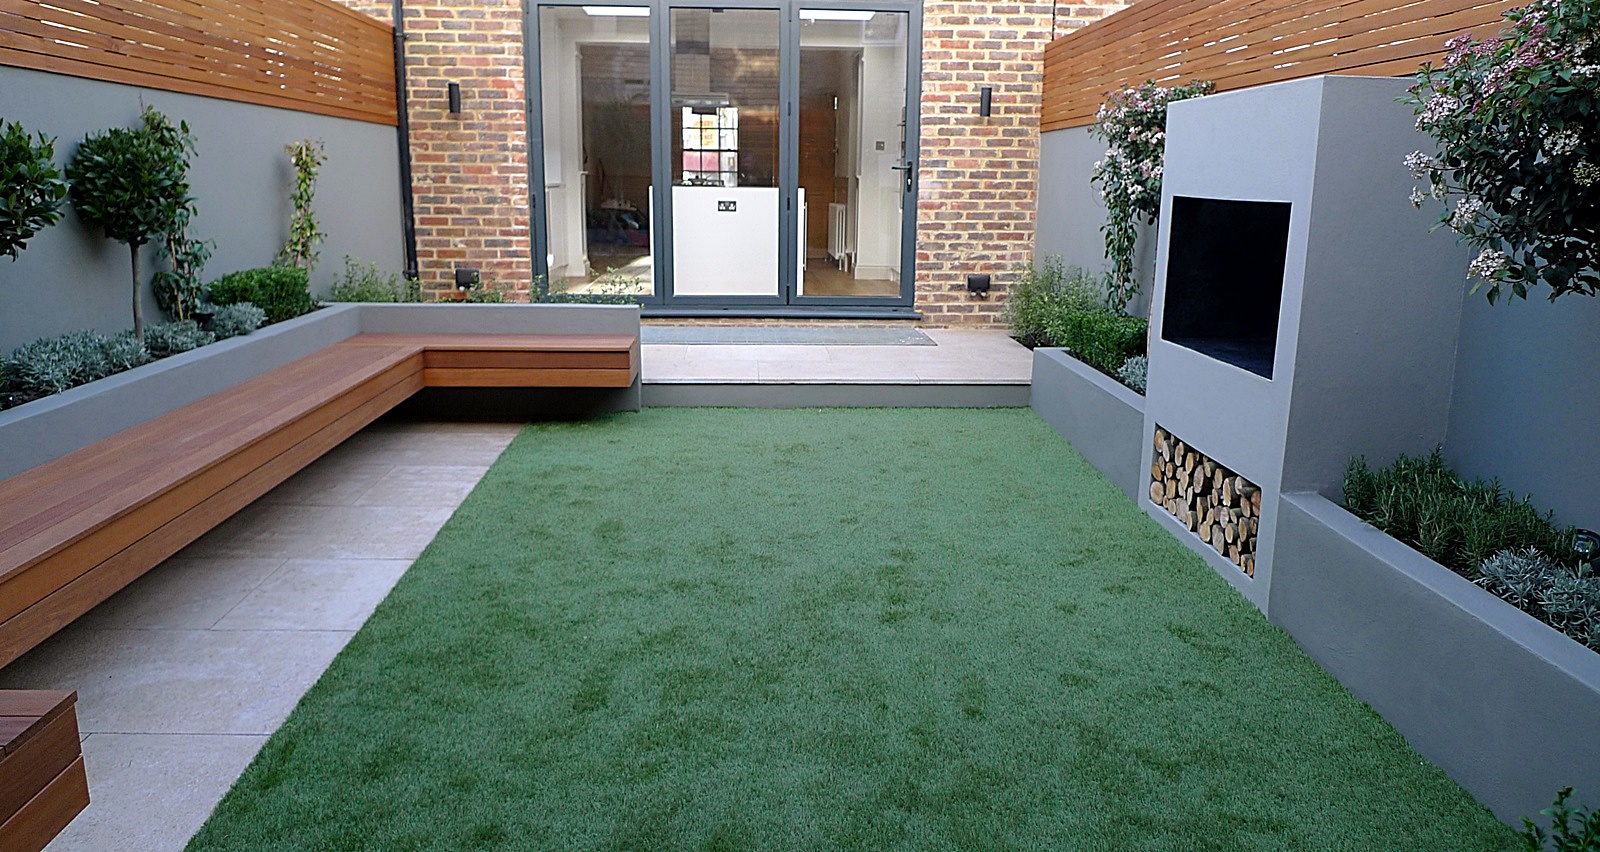 Modern garden designer London artificial grass hardwood seat fireplace